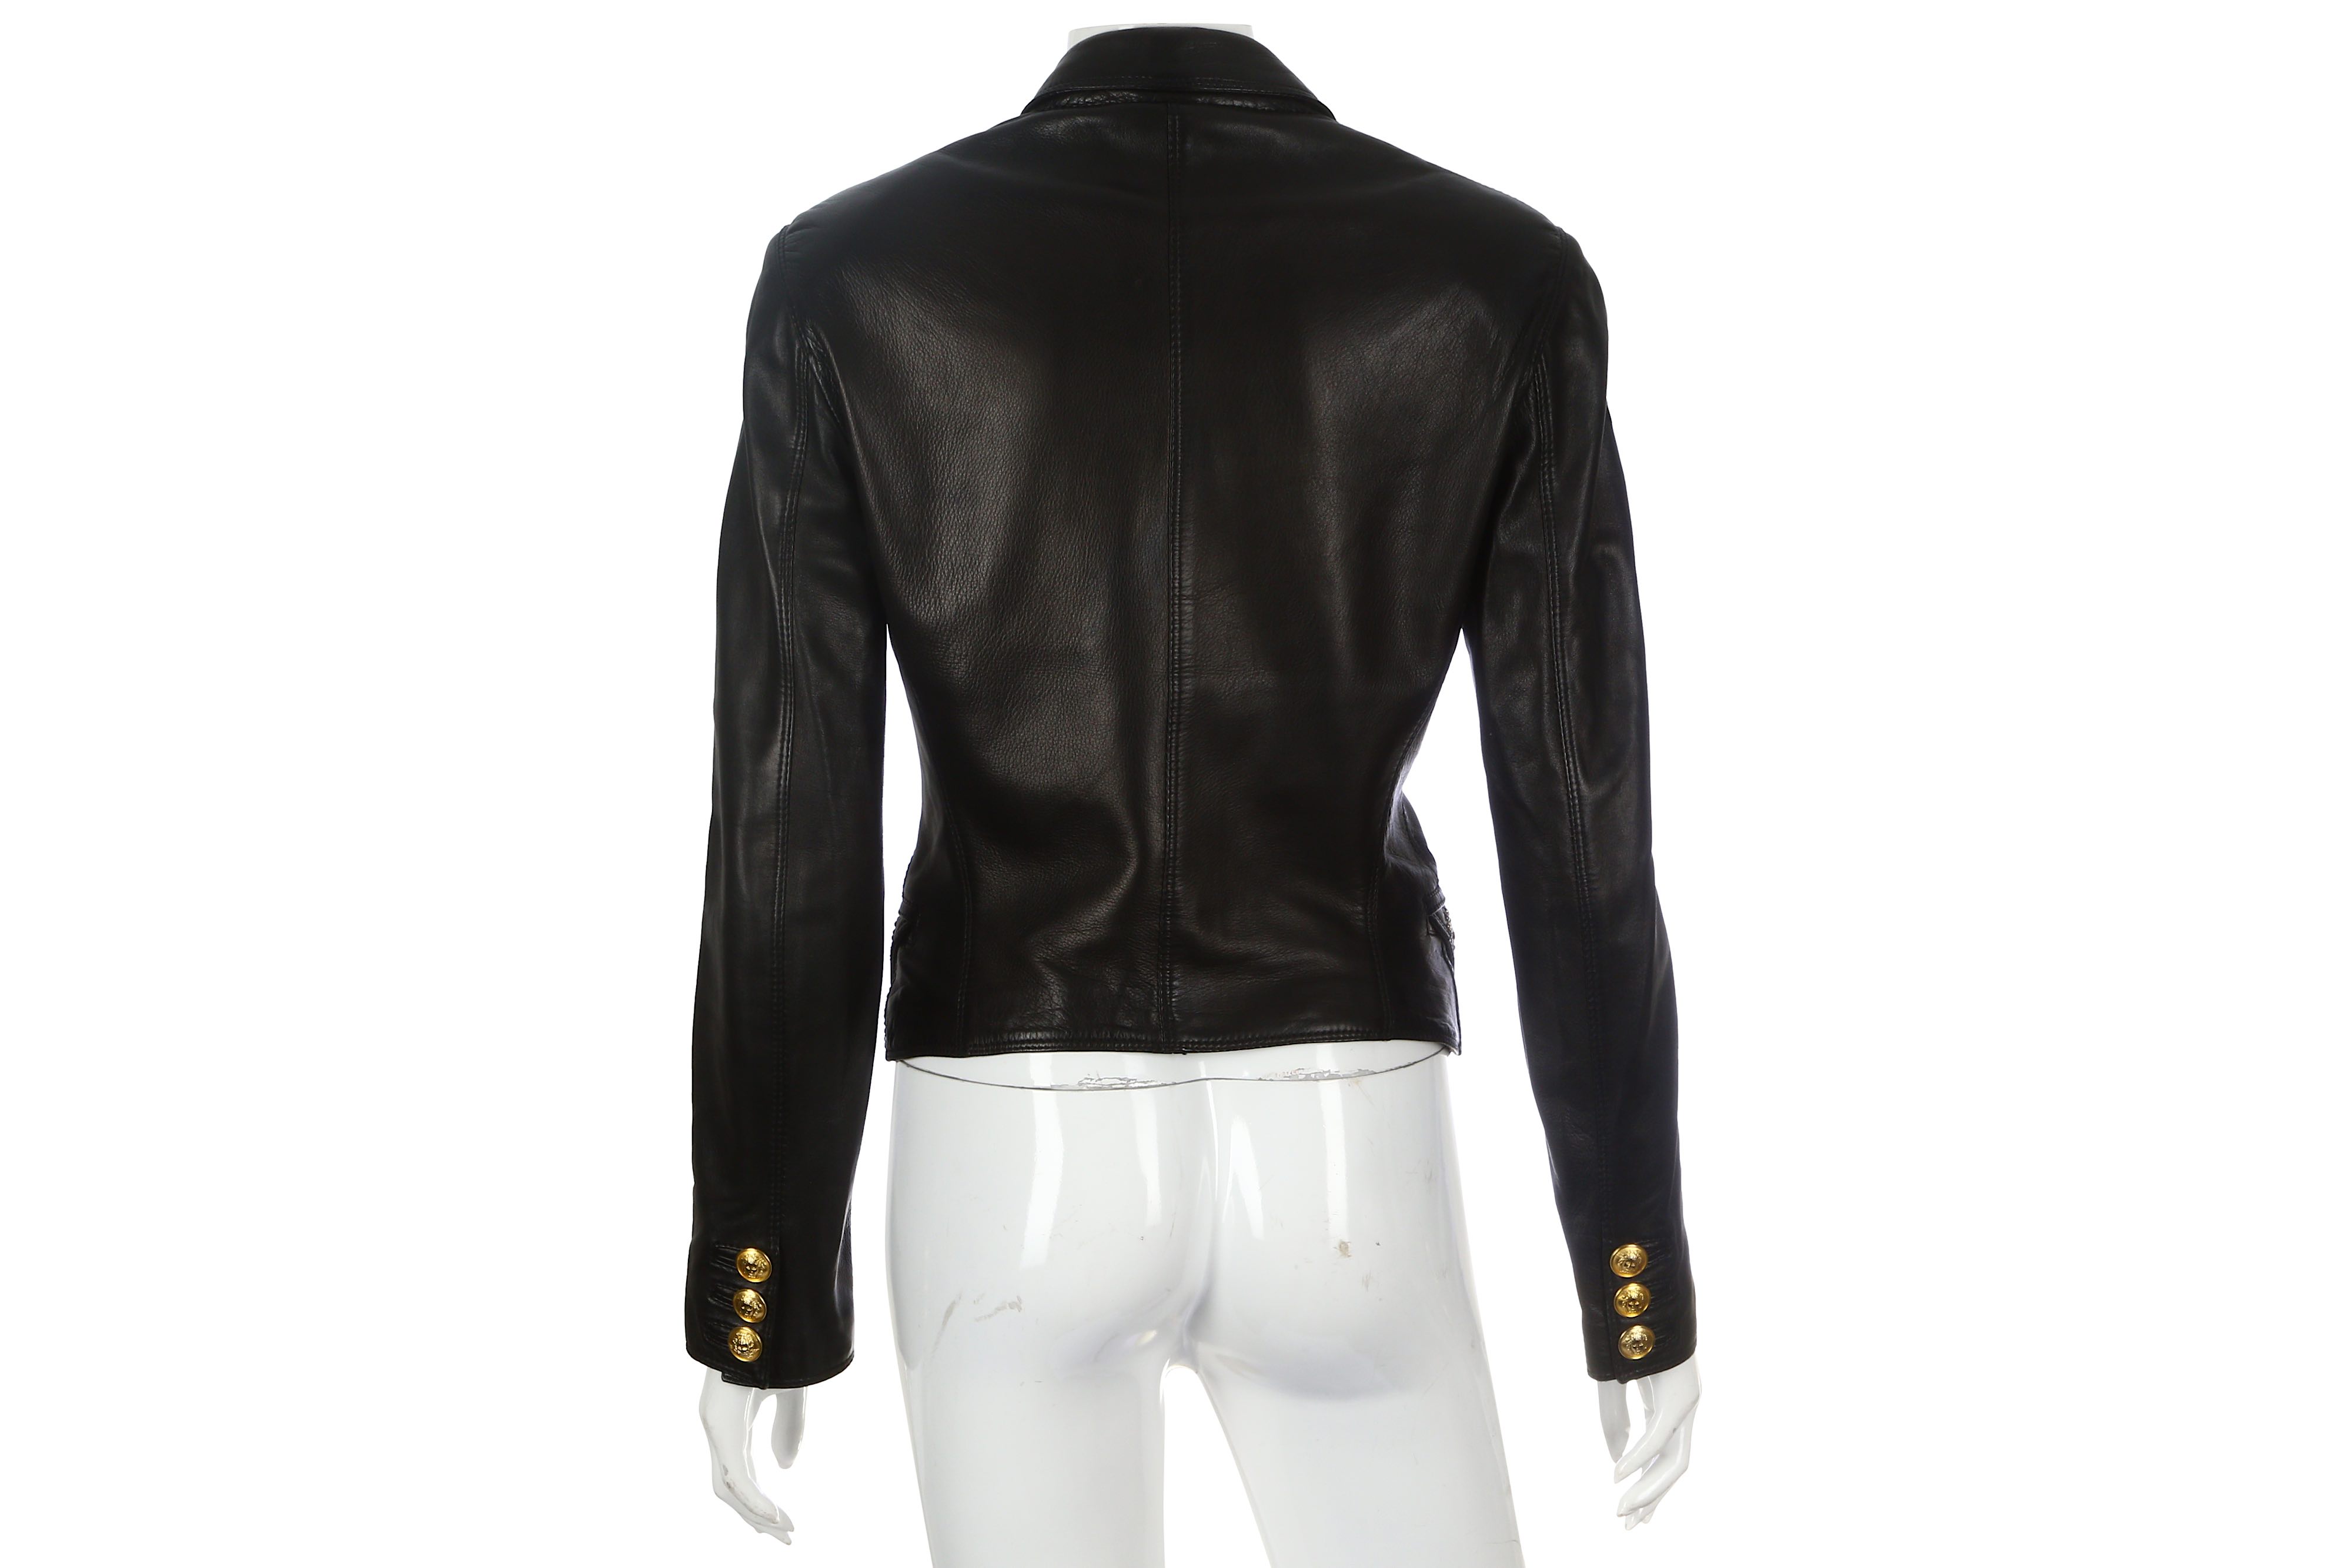 Gianni Versace Black Leather Jacket - Image 3 of 7